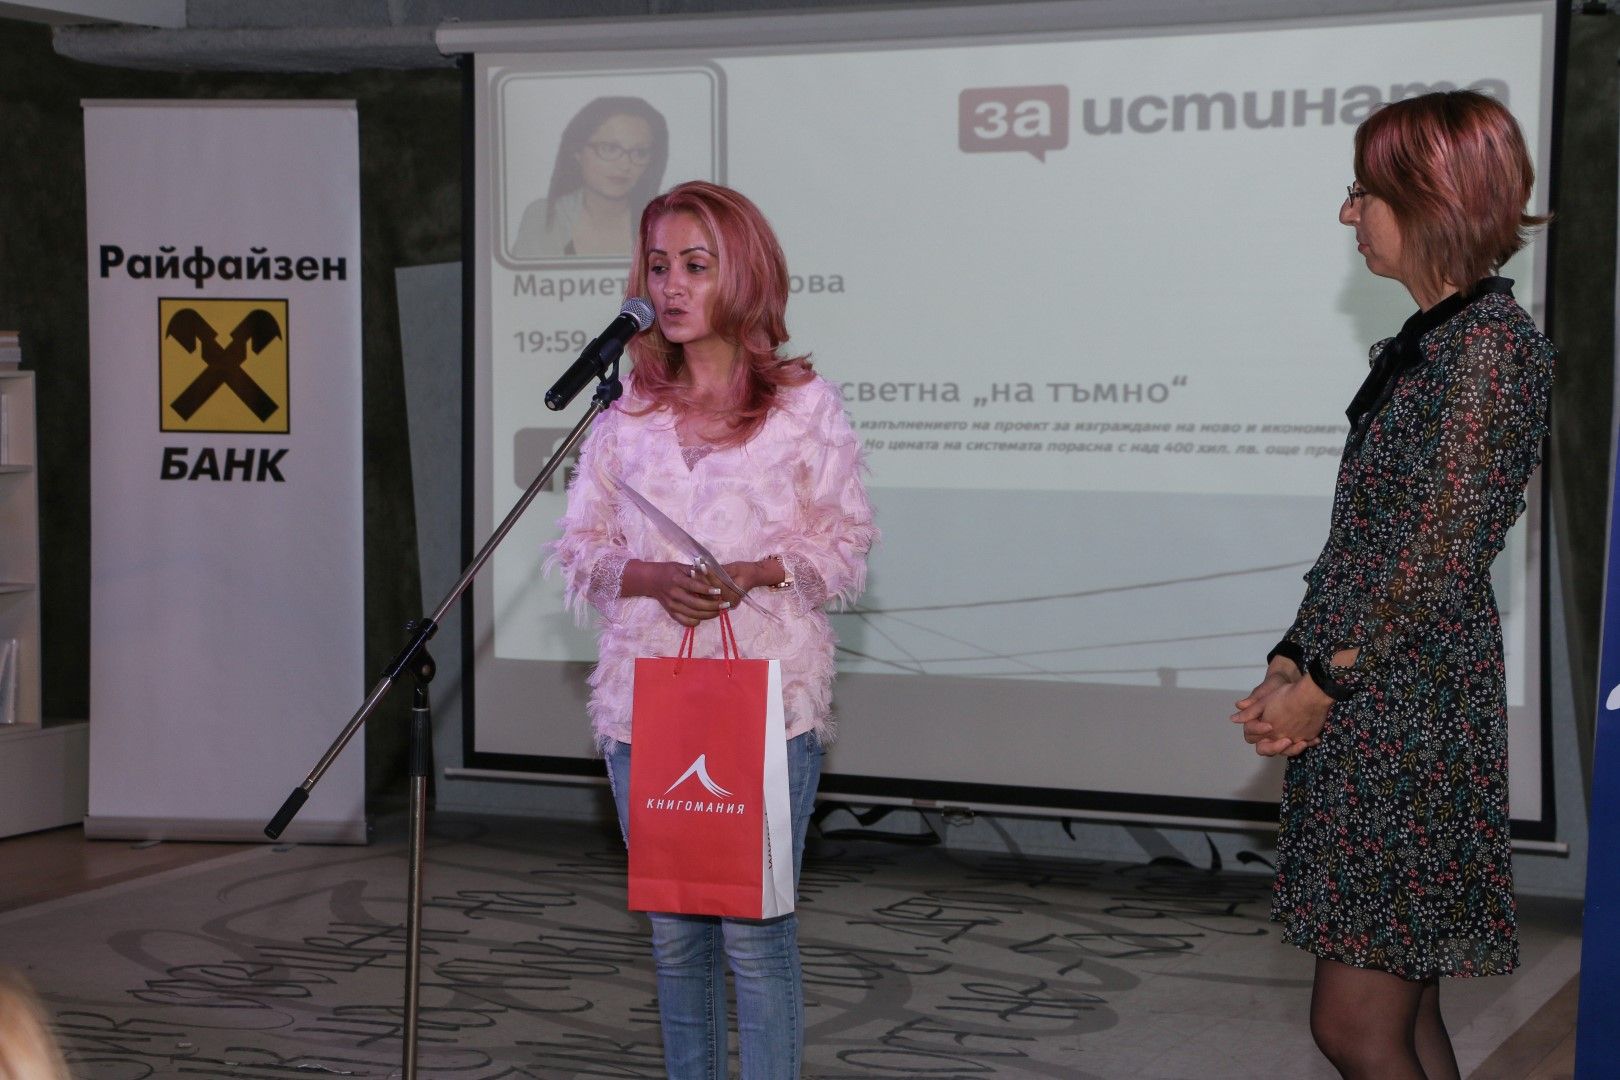 Мариета Димитрова, победител в категория "Икономика"